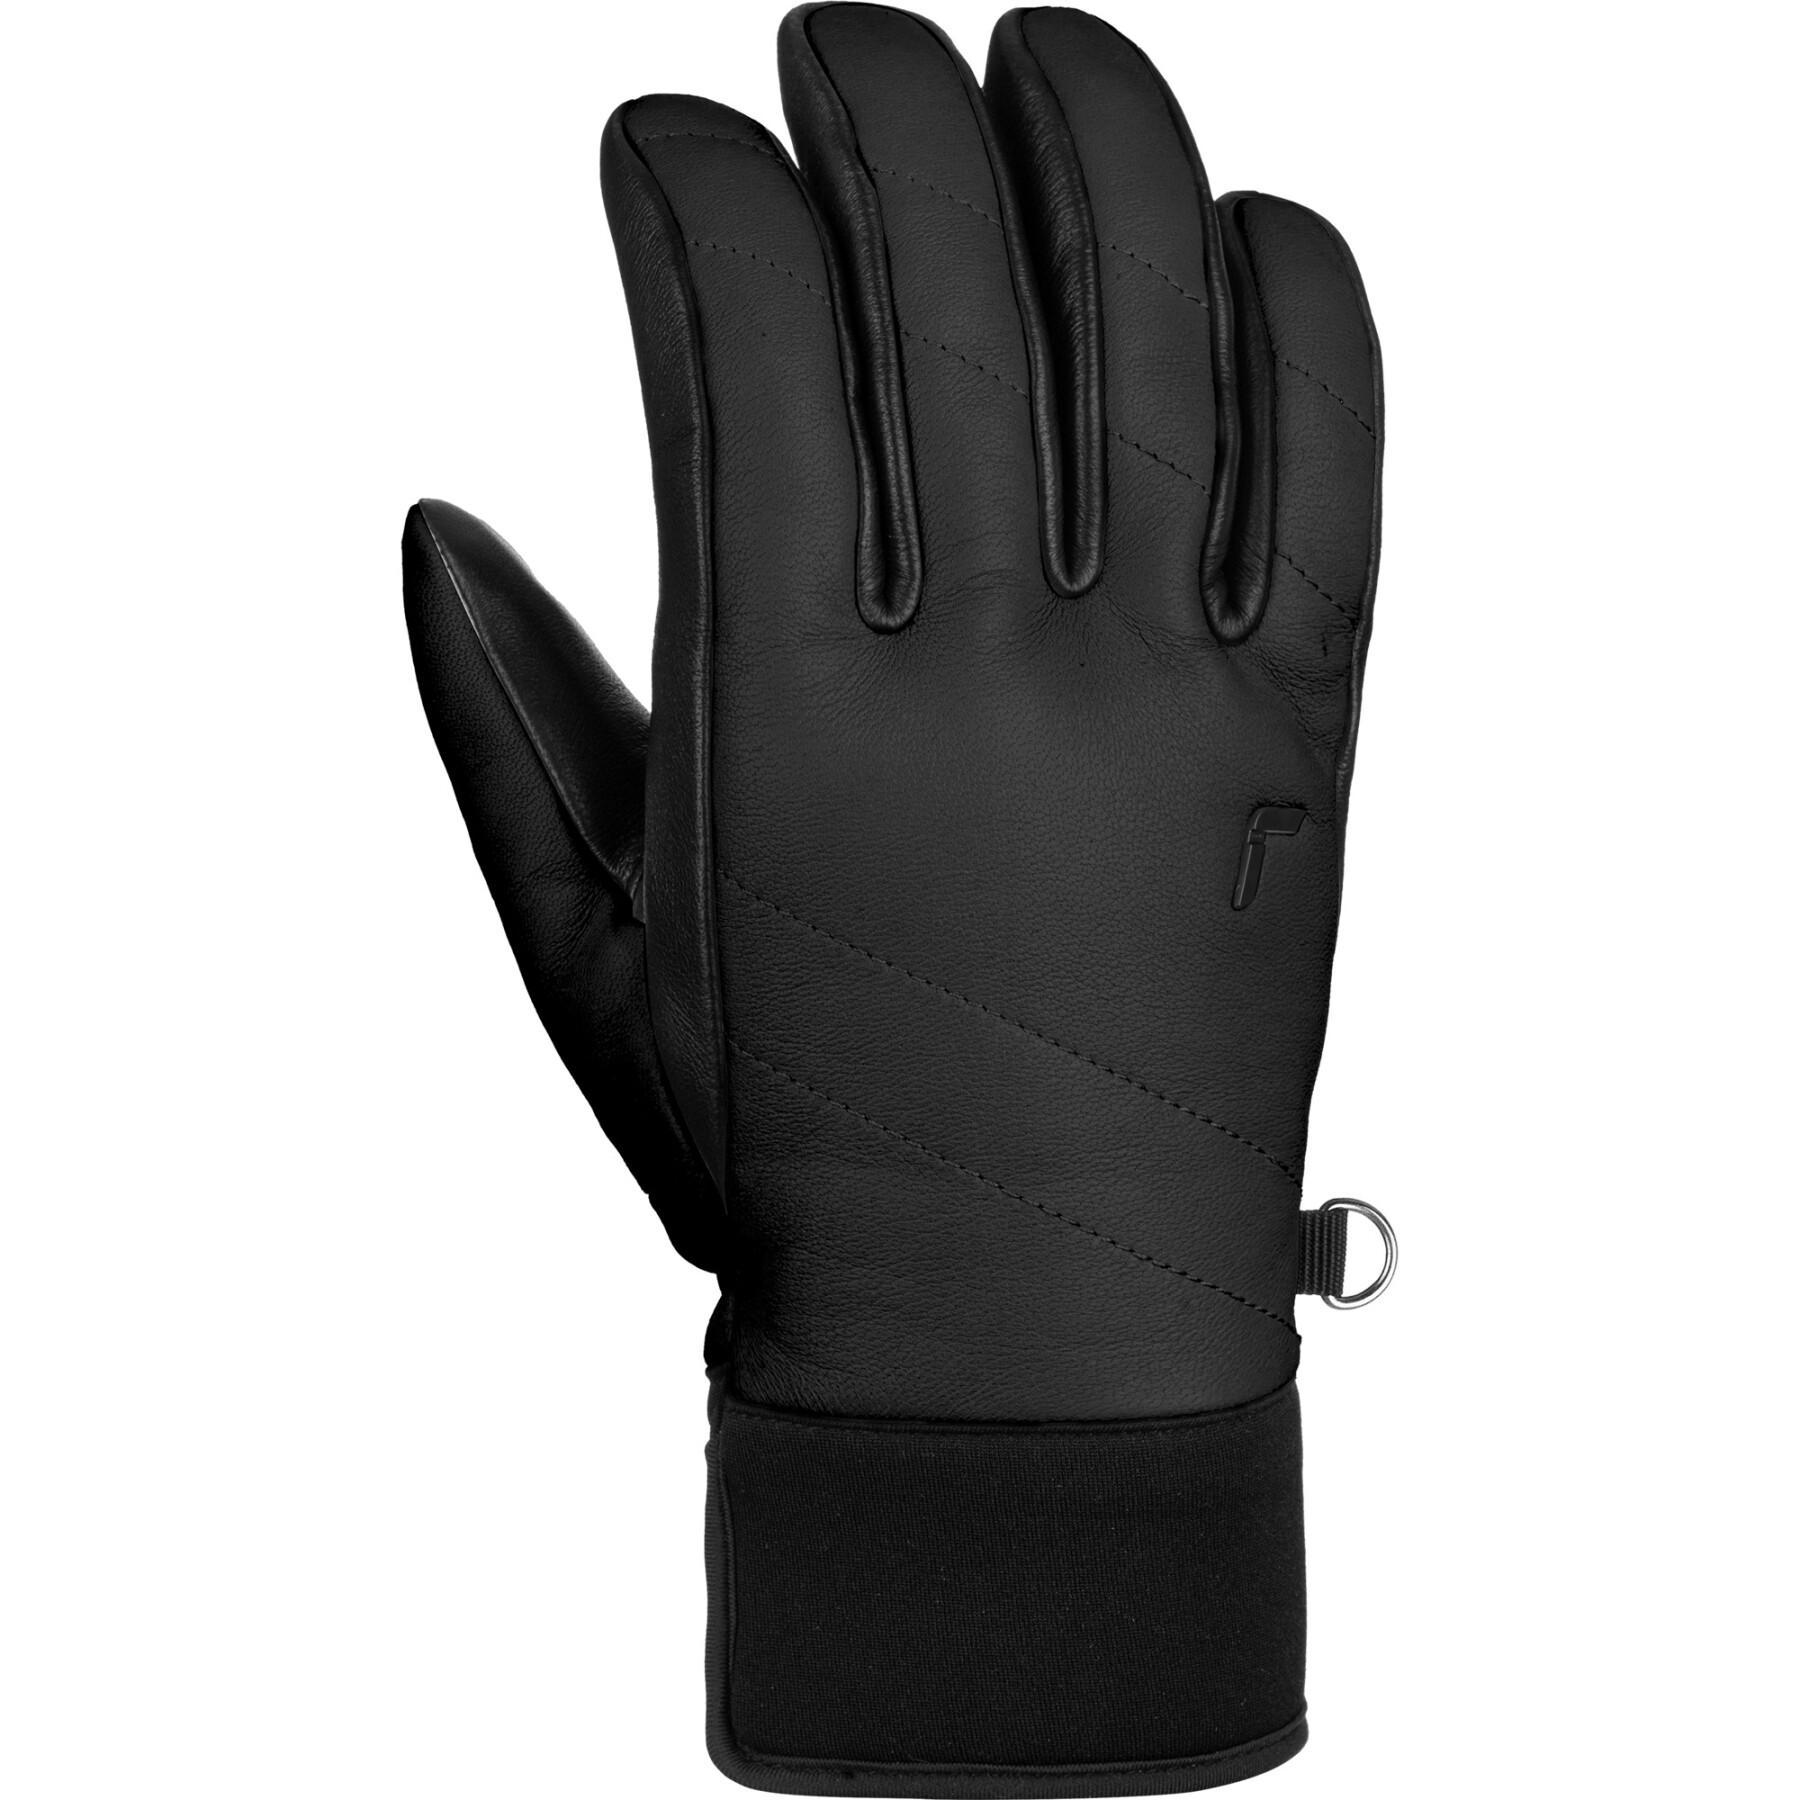 Ski gloves Reusch Juliette - - - Gloves Accessories Winter Sports